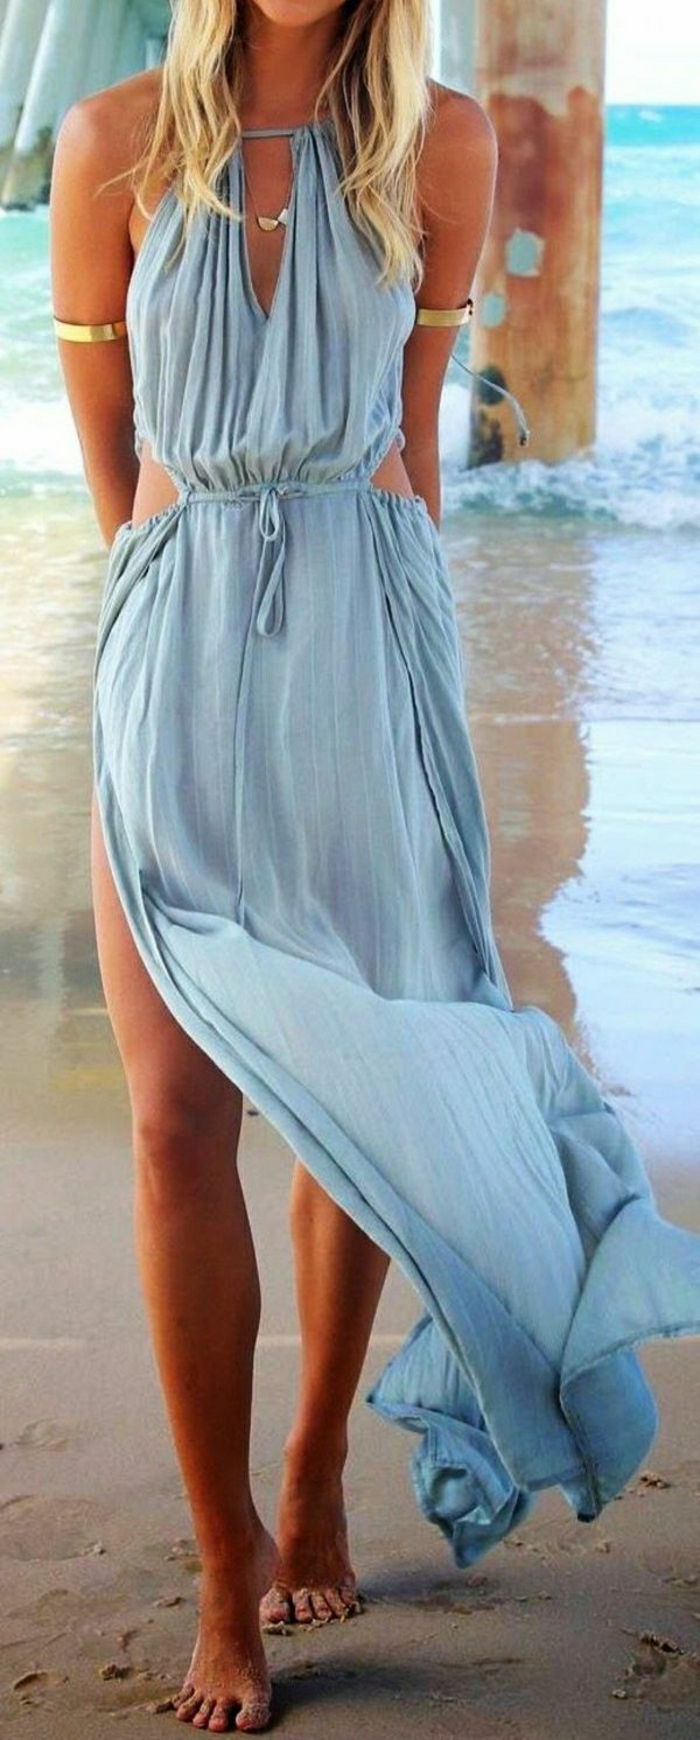 Beach Summer Long džínsové šaty a zlaté náramky